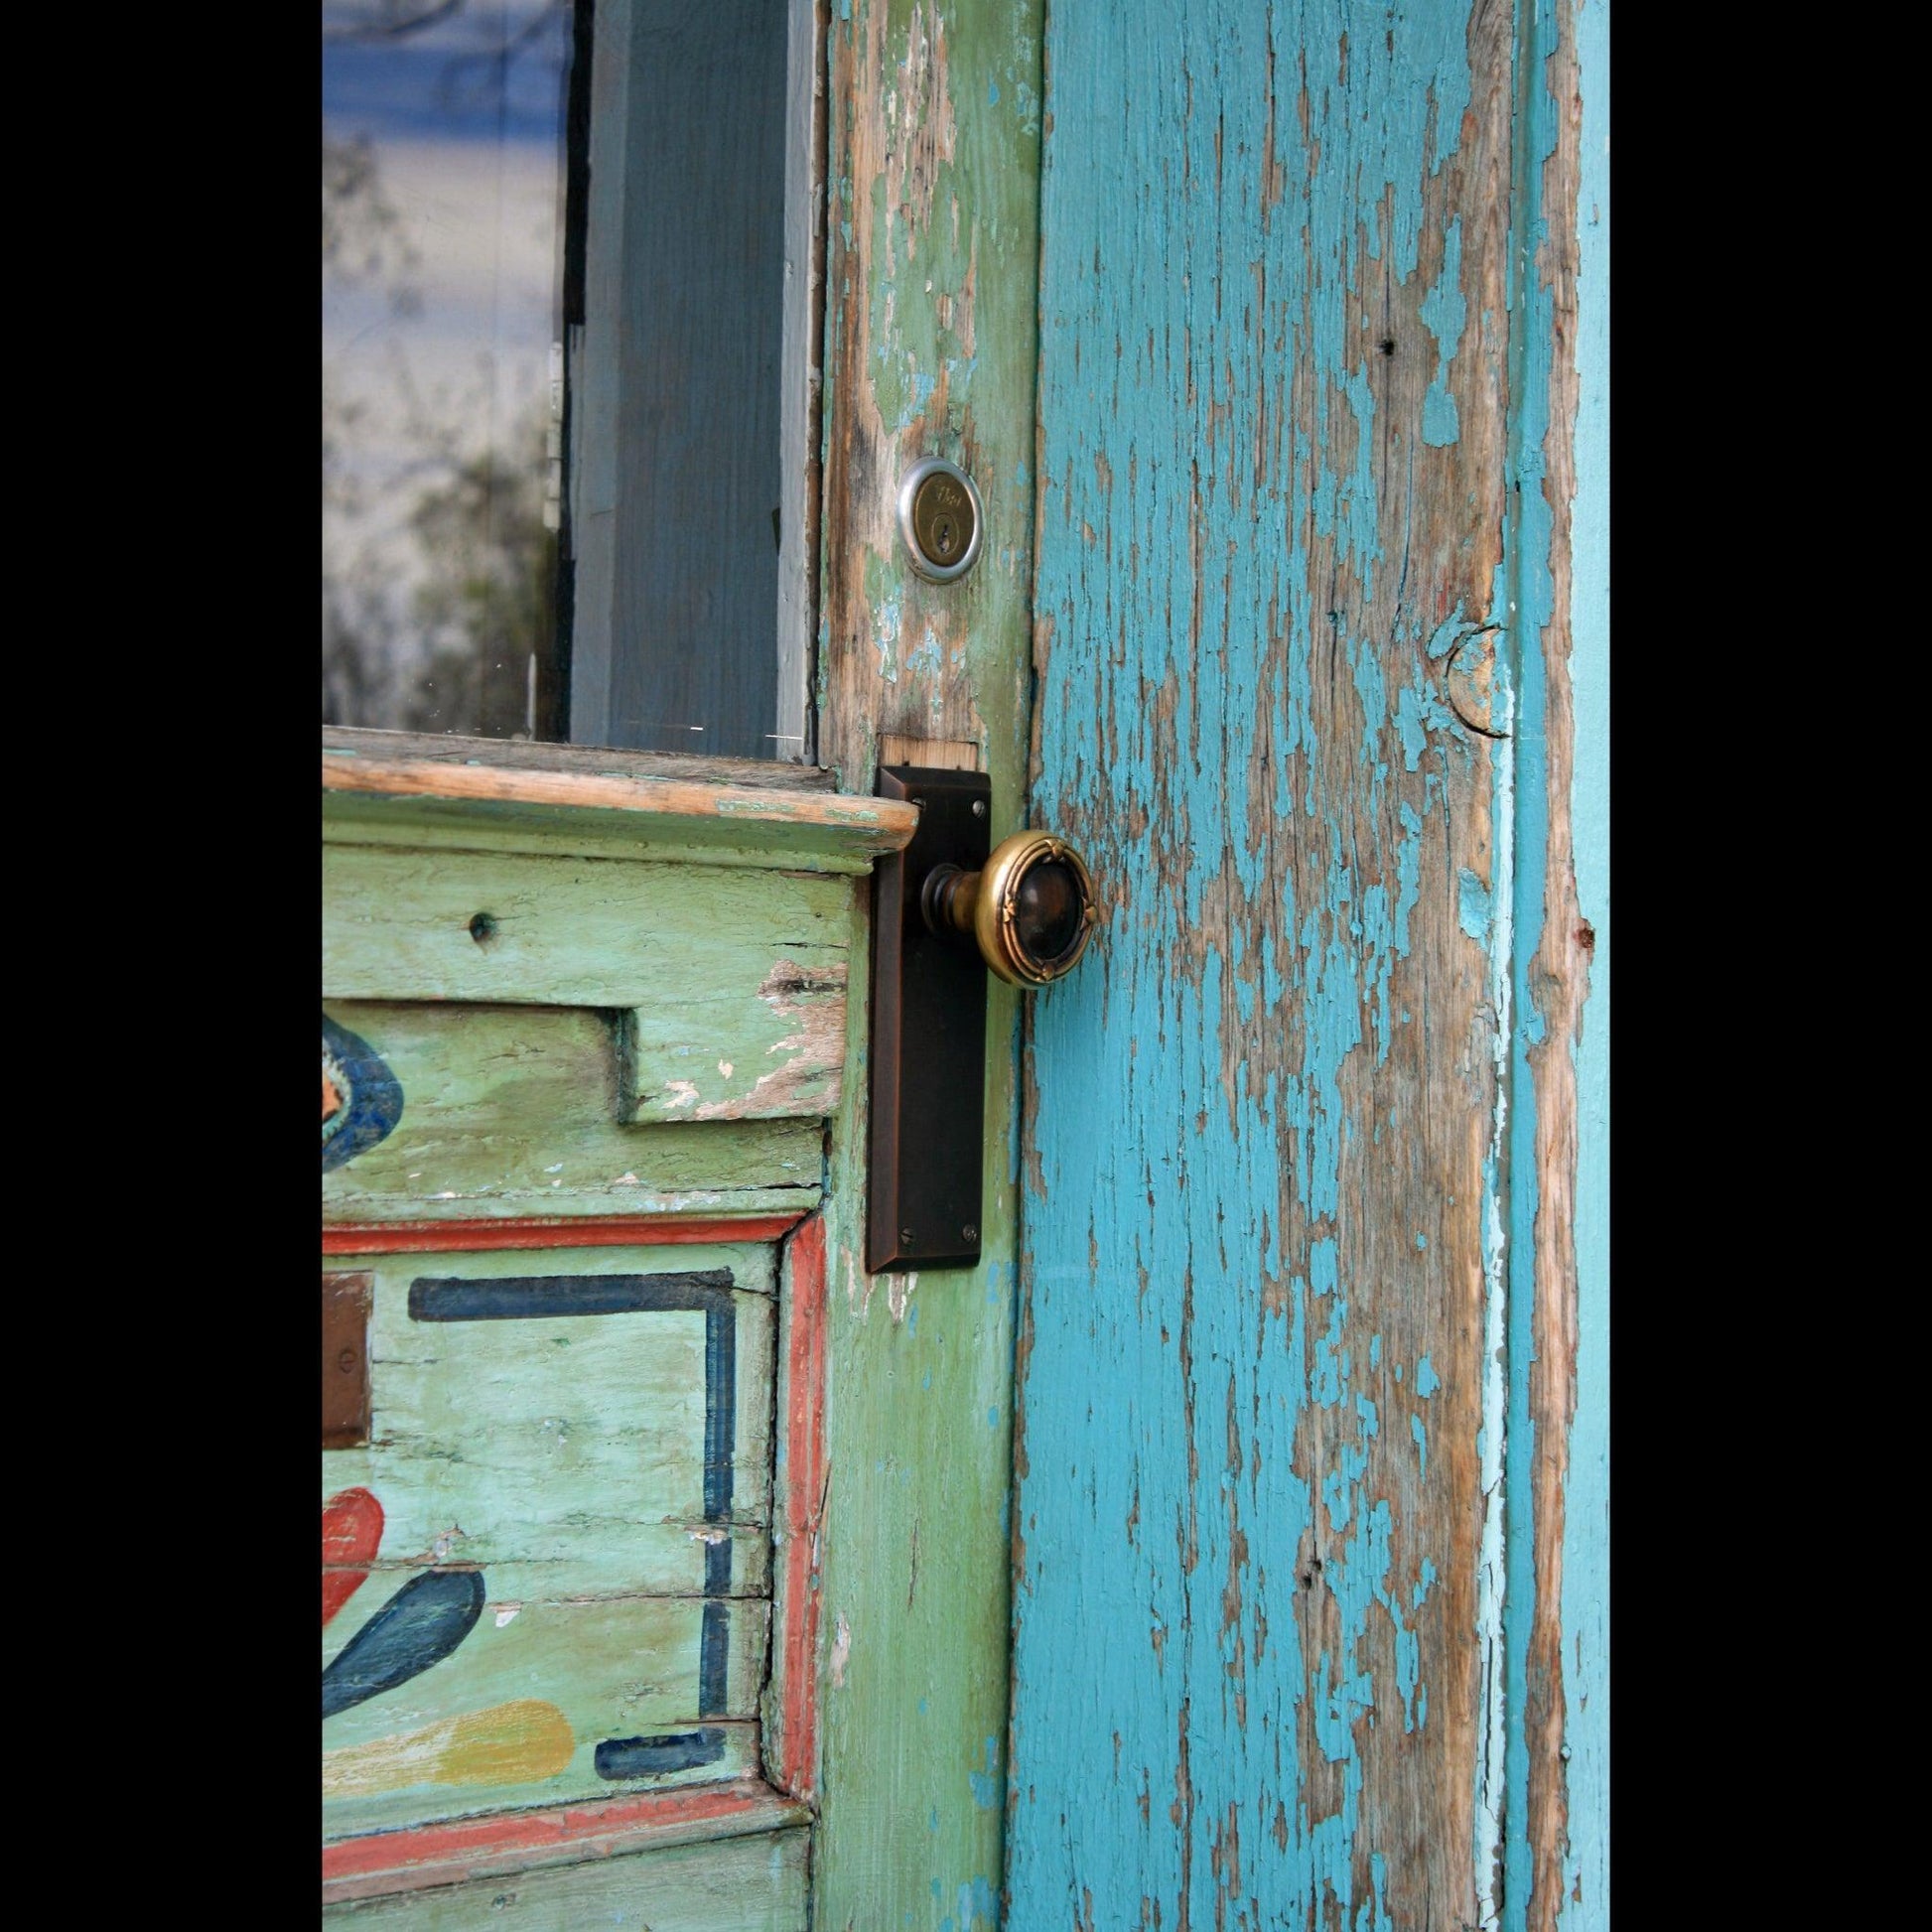 colorful-door-handle-v-isenhower-photography - V. Isenhower Photography